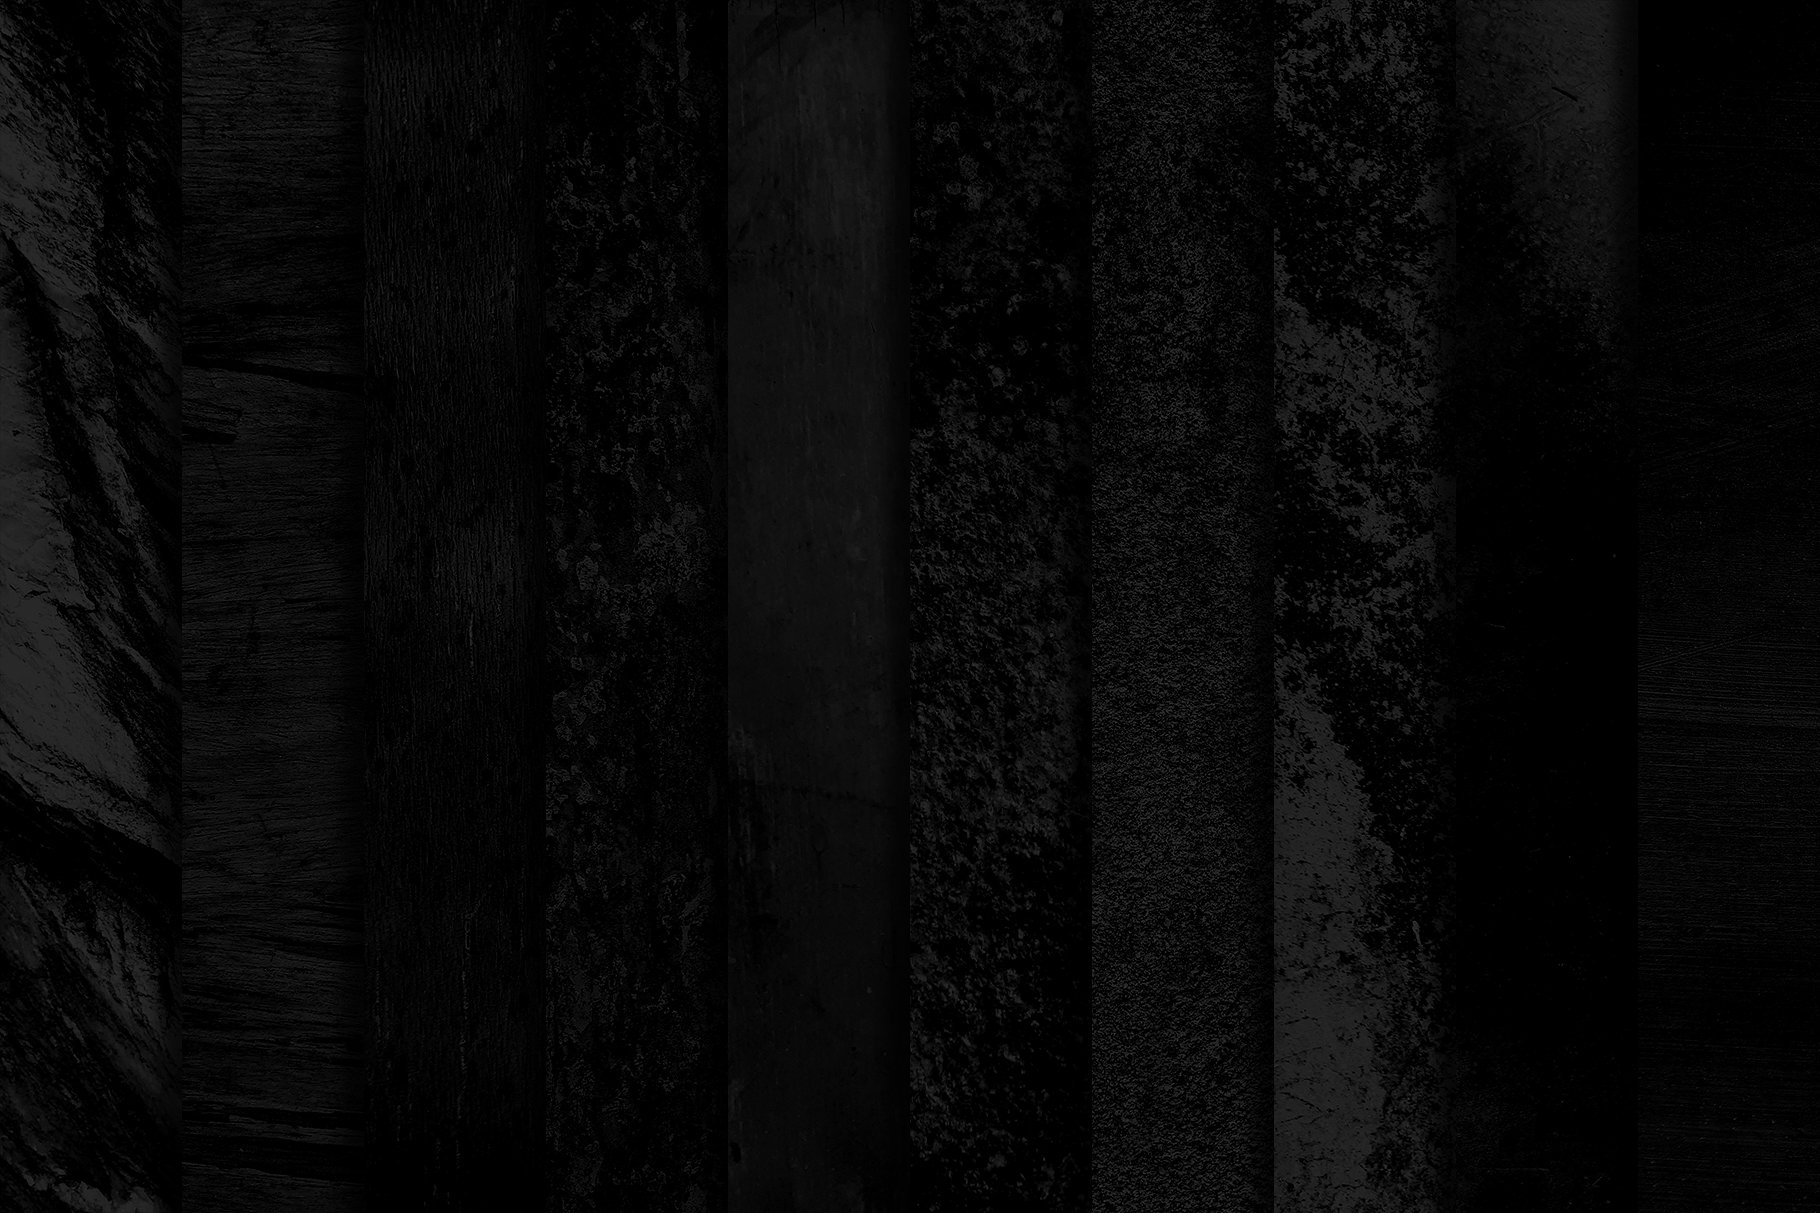 50款高品质的黑色纹理素材 50 Black Textures vol.4 [jpg]插图3